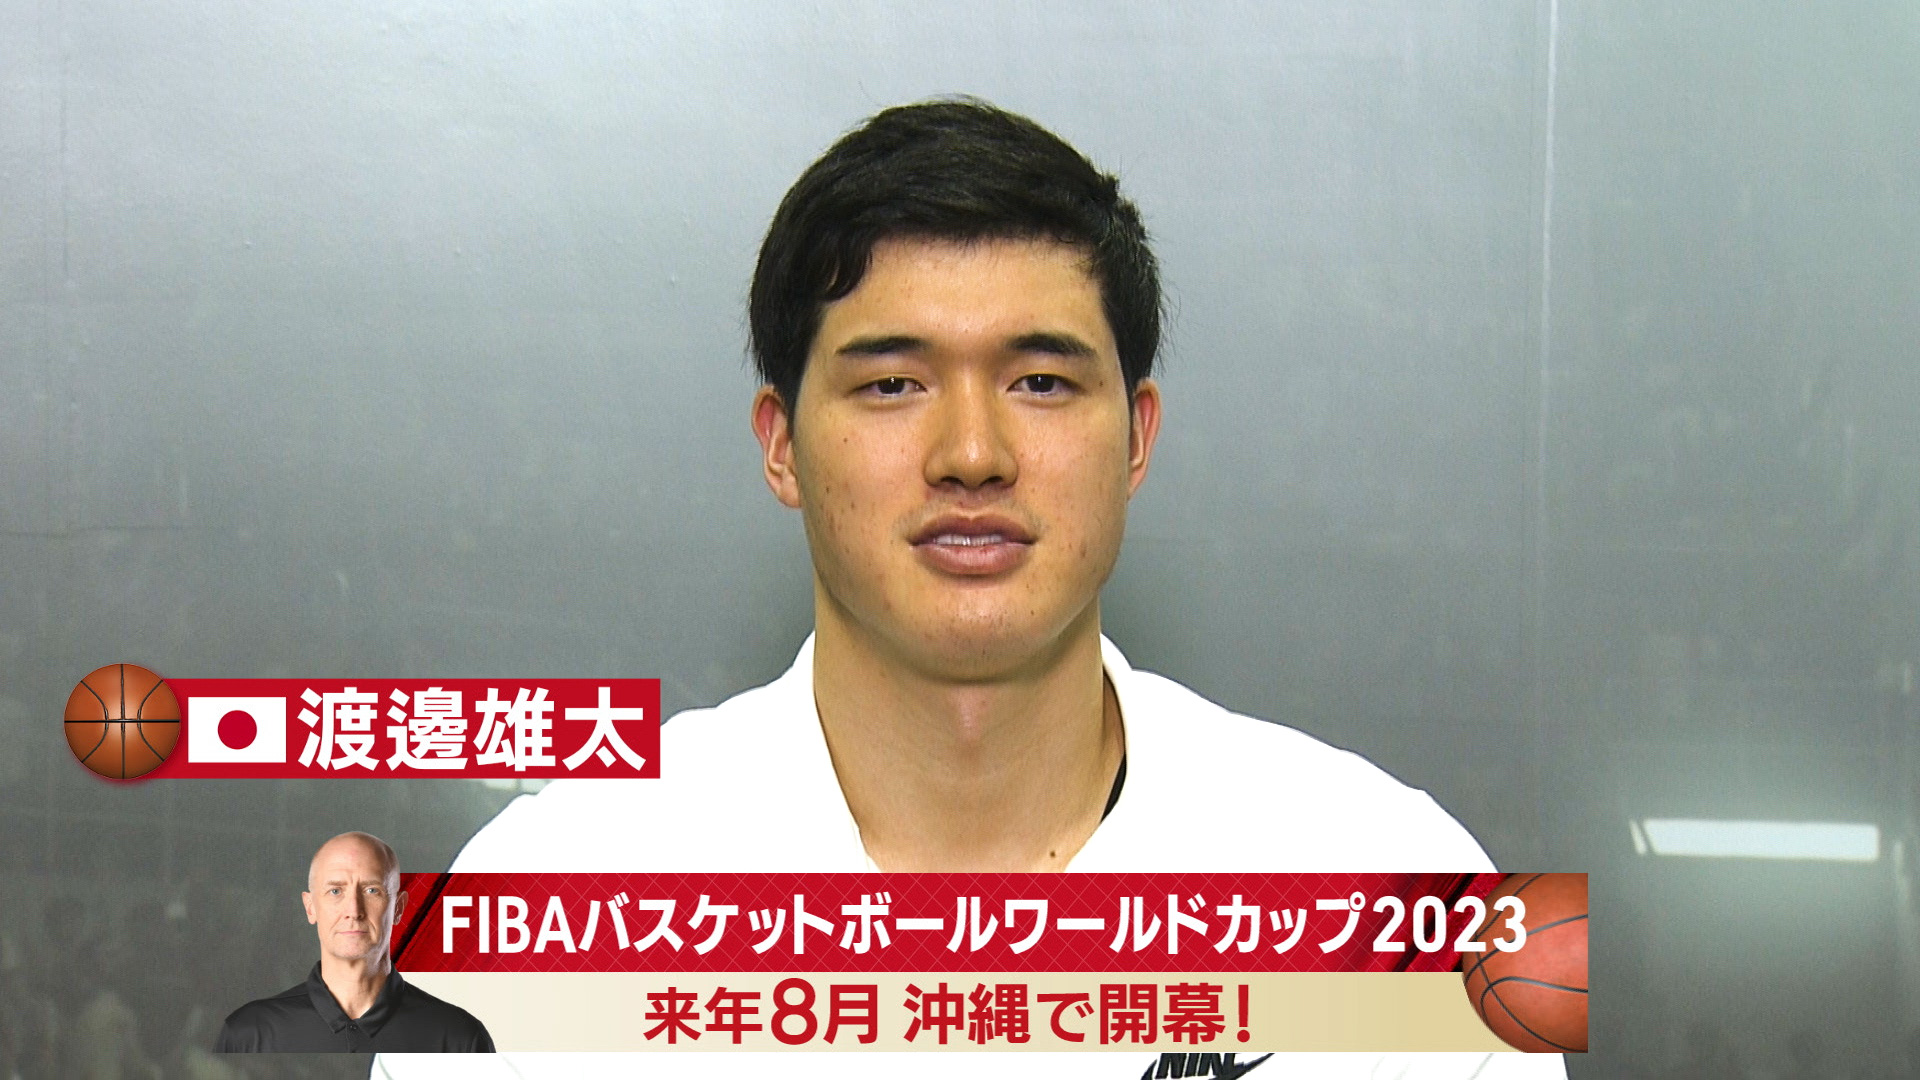 Fiba バスケットボールワールドカップ23アジア予選 テレビ朝日